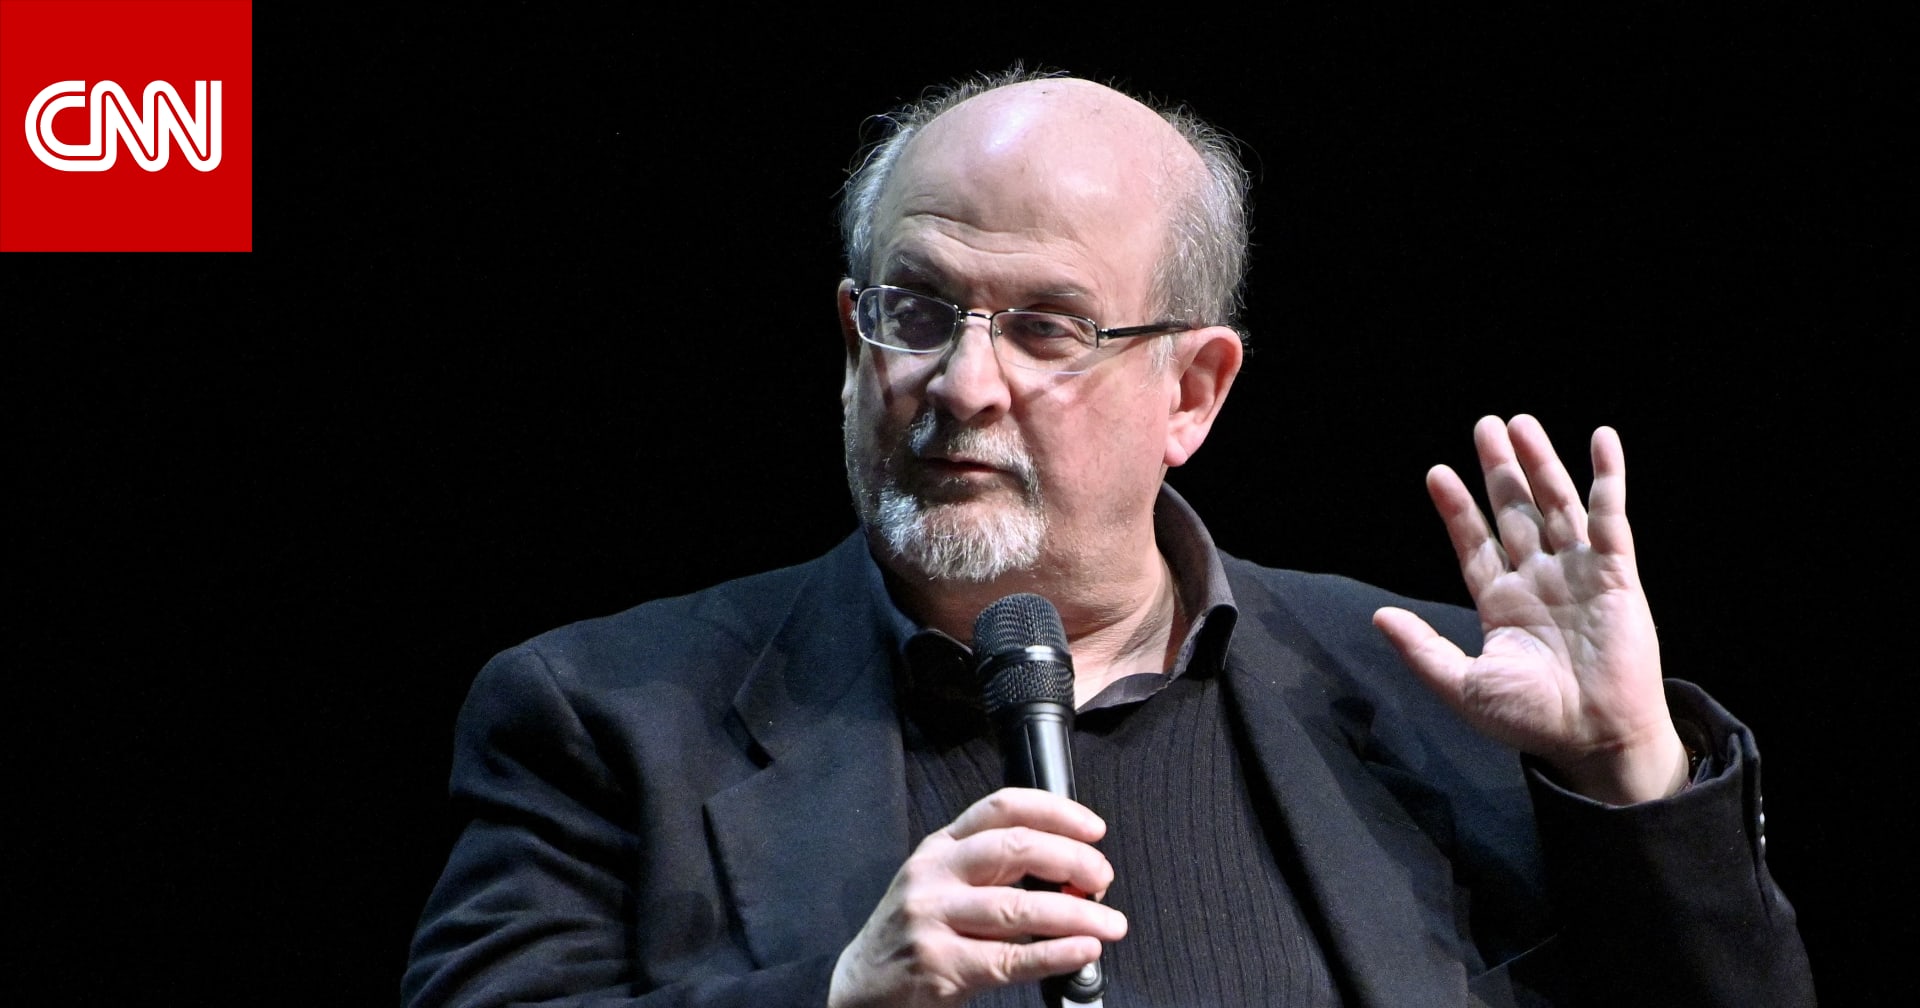 سلمان رشدي مؤلف “آيات شيطانية” يحذر: حرية النشر معرضة للخطر